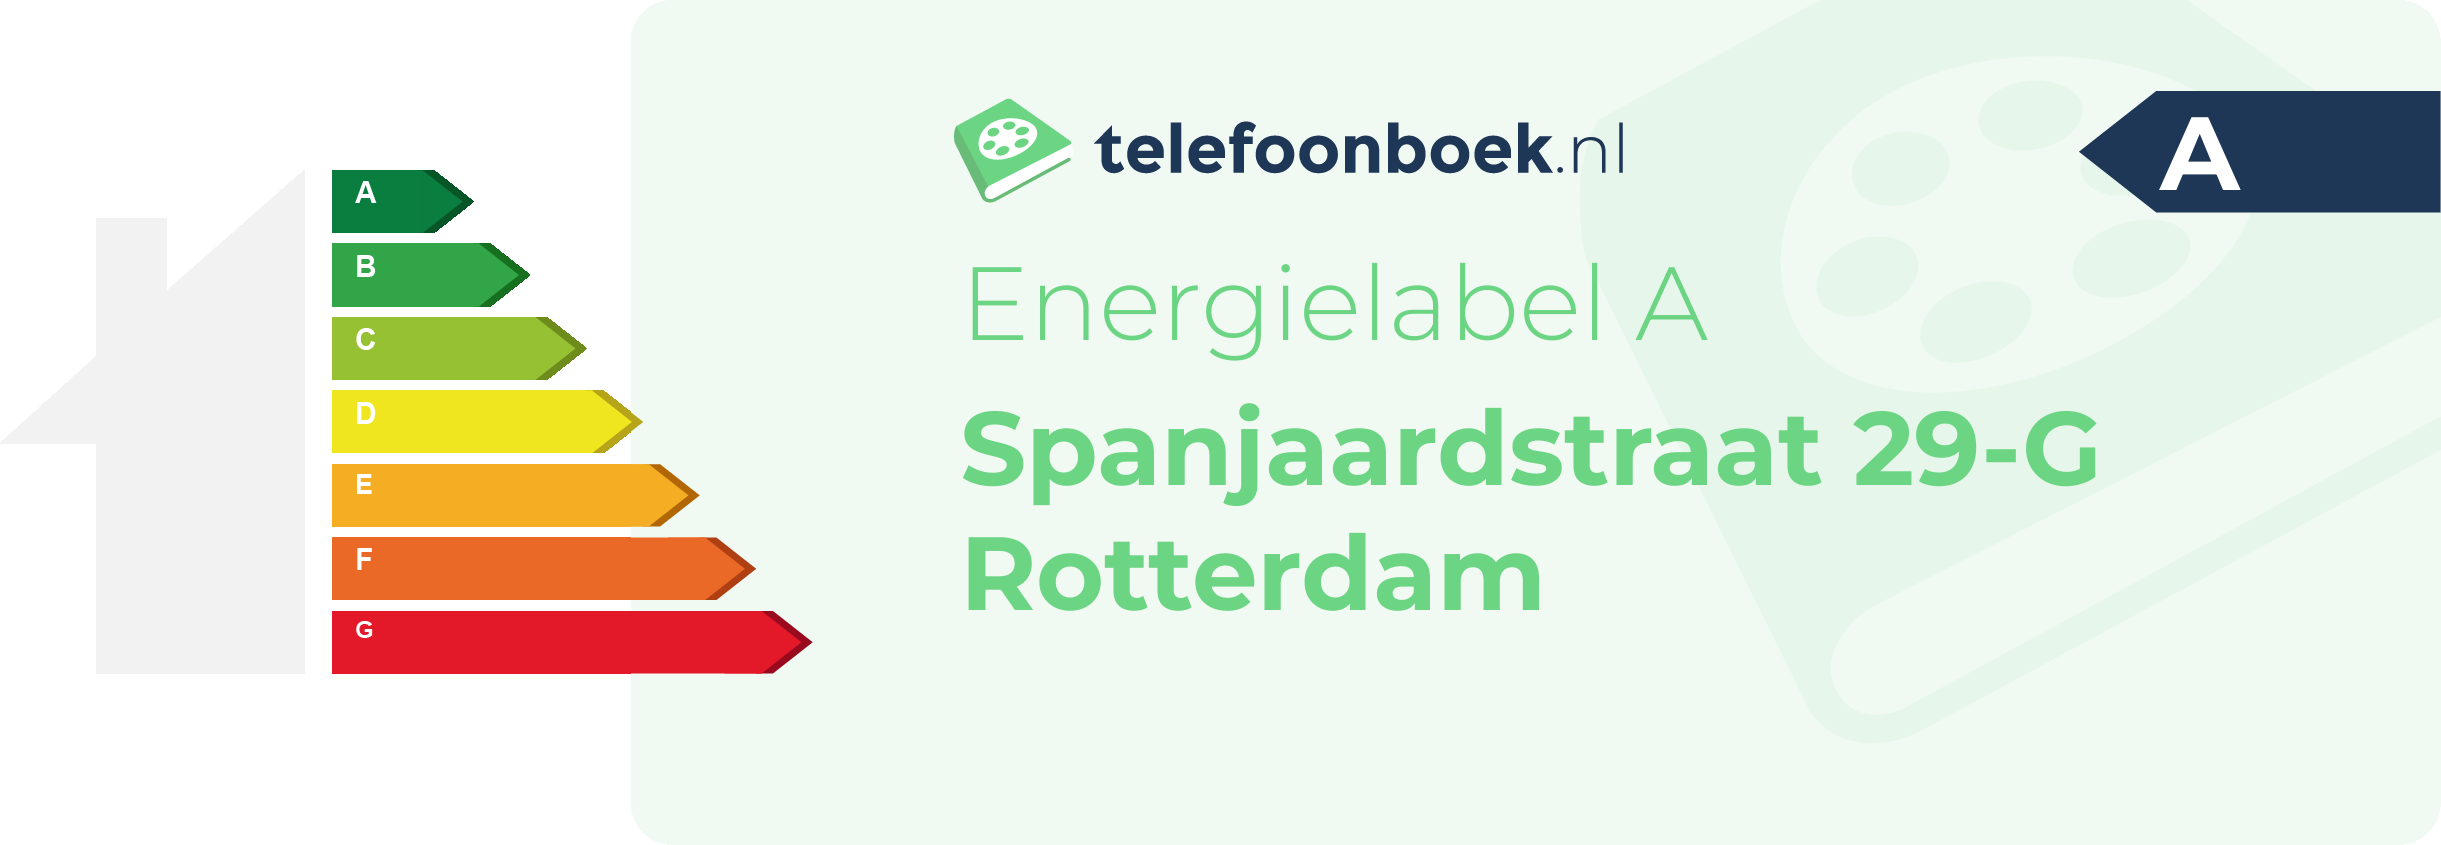 Energielabel Spanjaardstraat 29-G Rotterdam